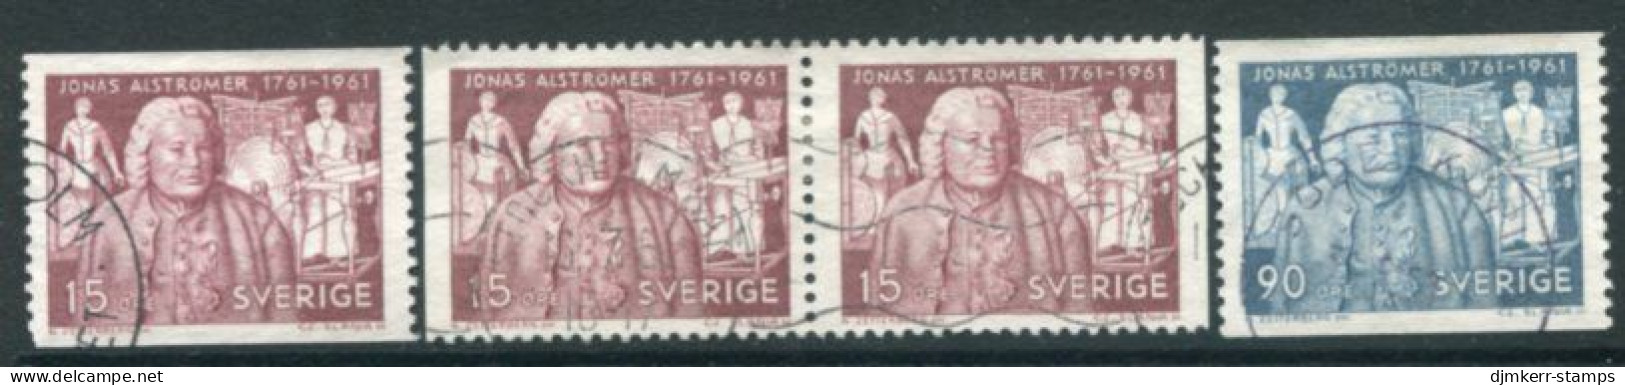 SWEDEN 1961 Alströmer Bicentenary Used.  Michel 473-74 - Usados